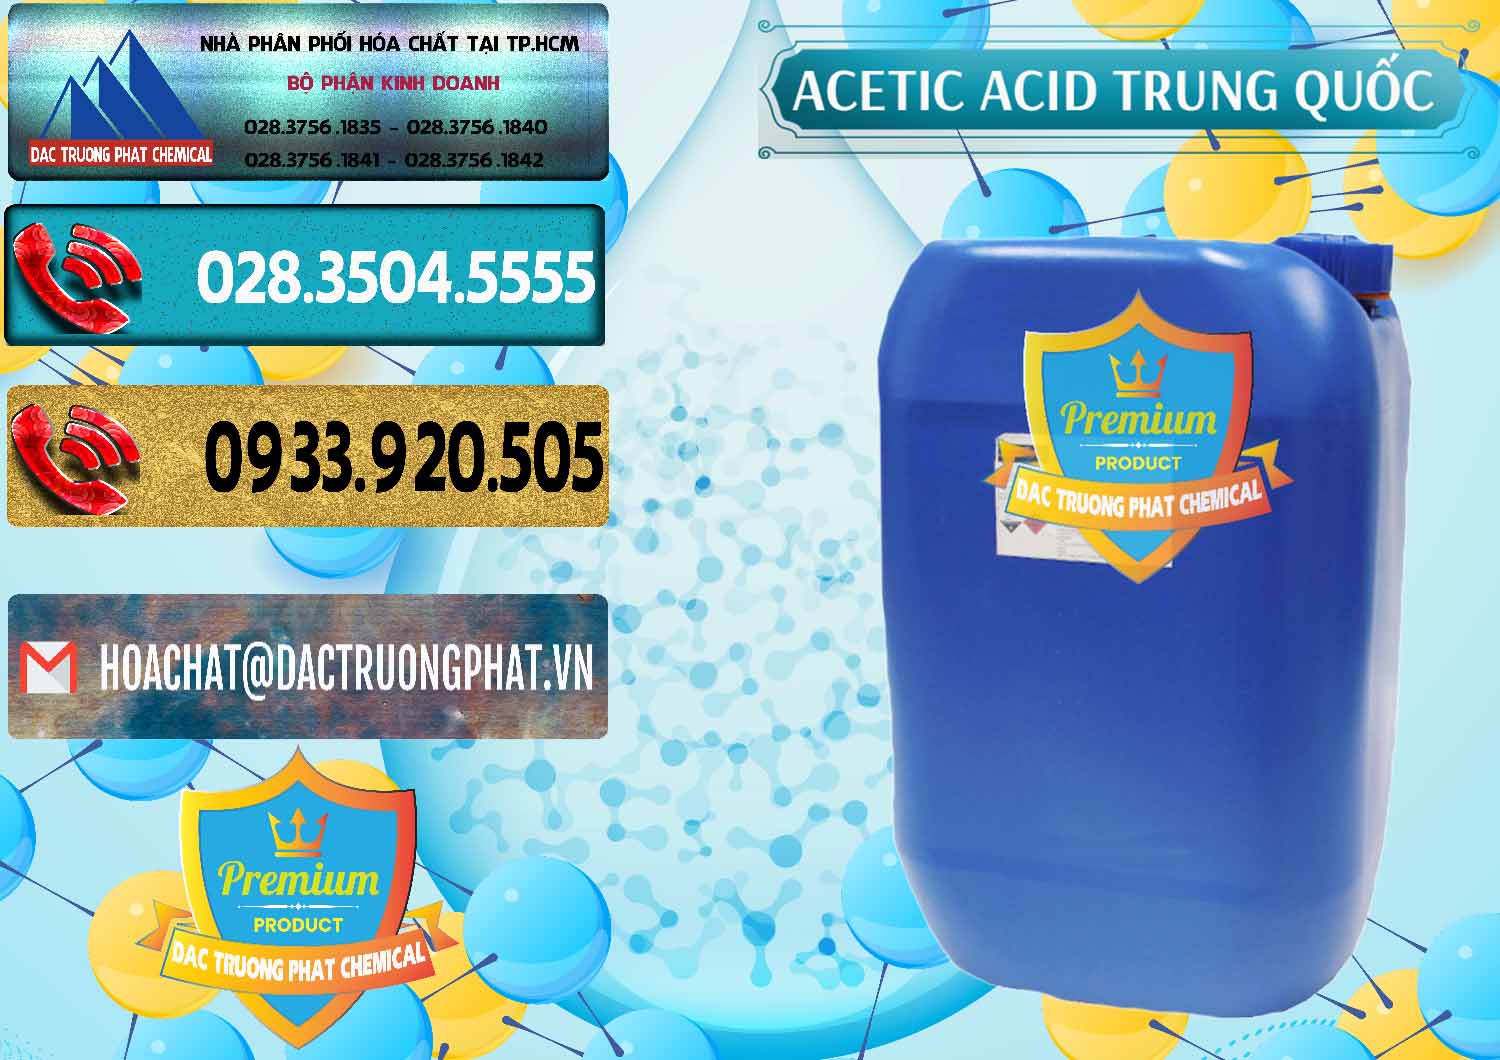 Cty bán & cung ứng Acetic Acid – Axit Acetic Trung Quốc China - 0358 - Công ty cung cấp - nhập khẩu hóa chất tại TP.HCM - hoachatdetnhuom.com